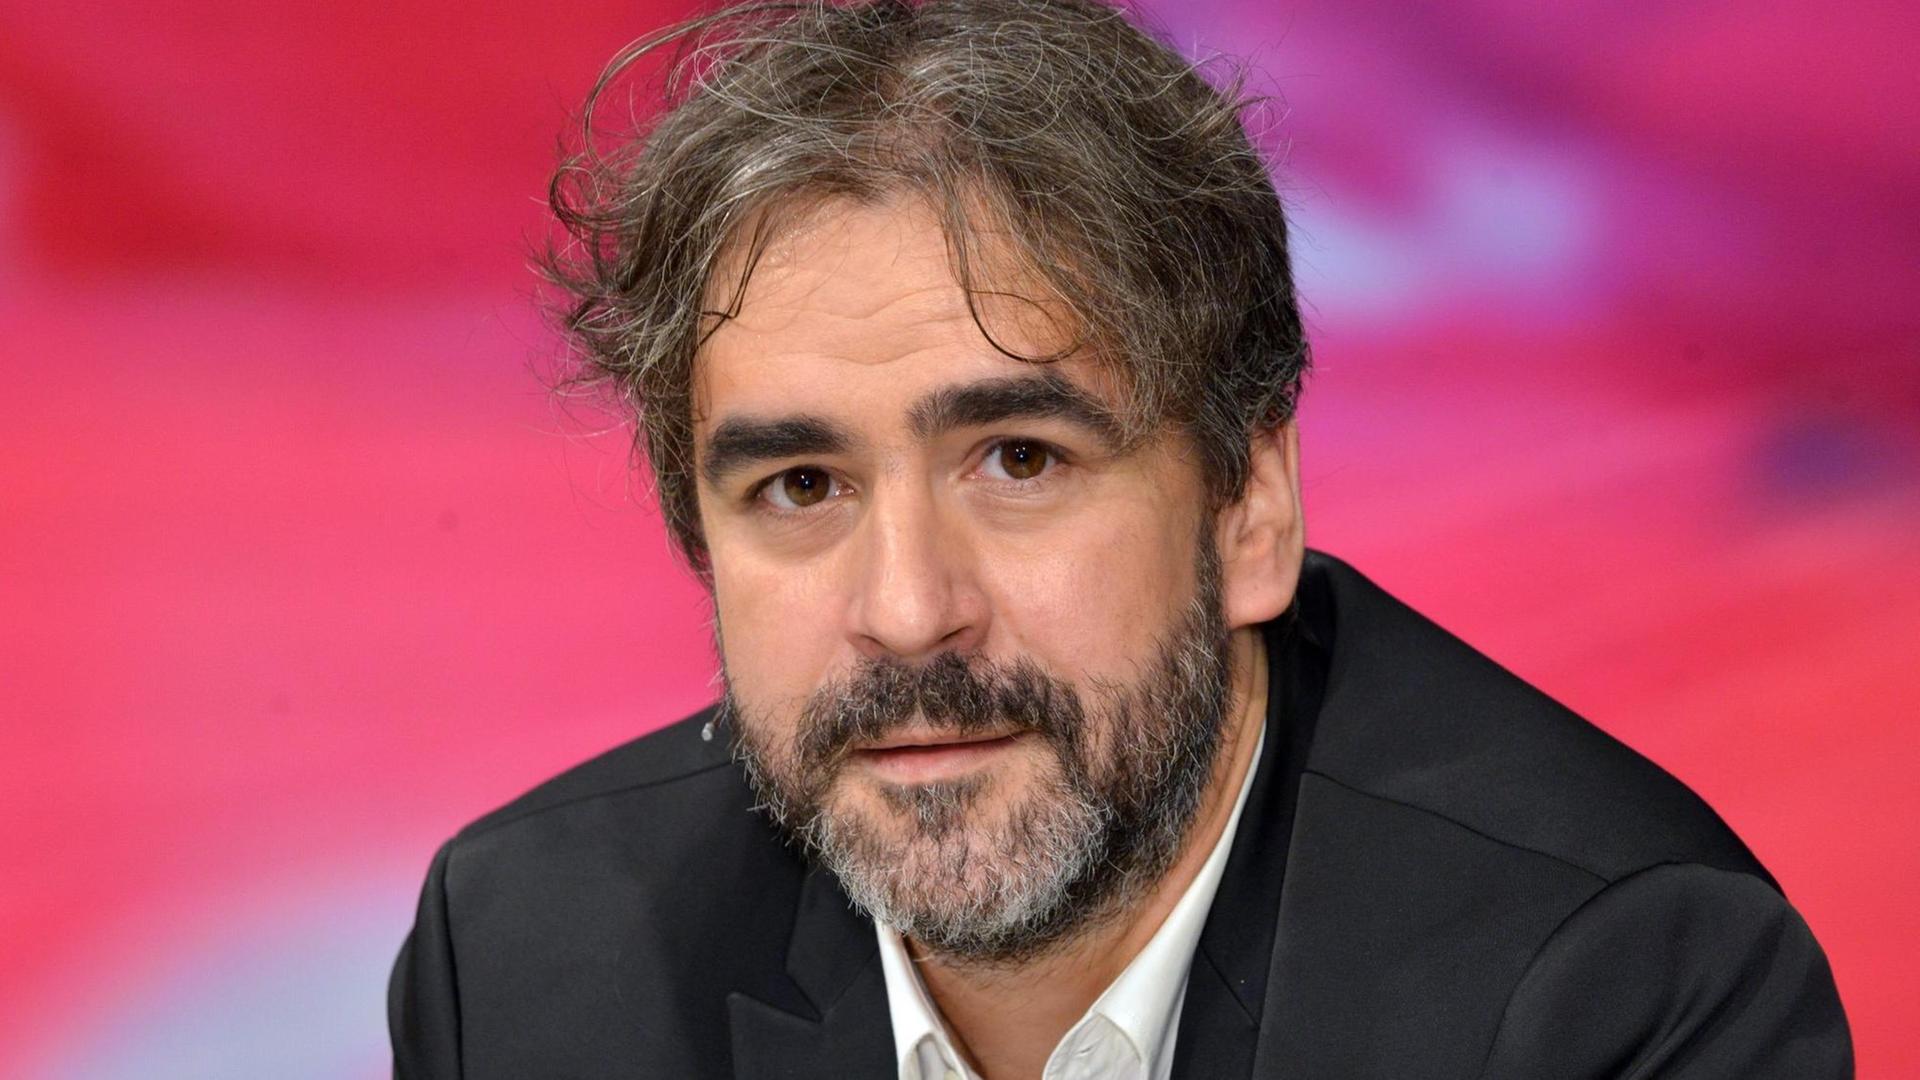 Der Türkei-Korrespondent der «Welt», Deniz Yücel, aufgenommen am 21.07.2016 in Berlin während der ZDF-Talkshow "Maybrit Illner".